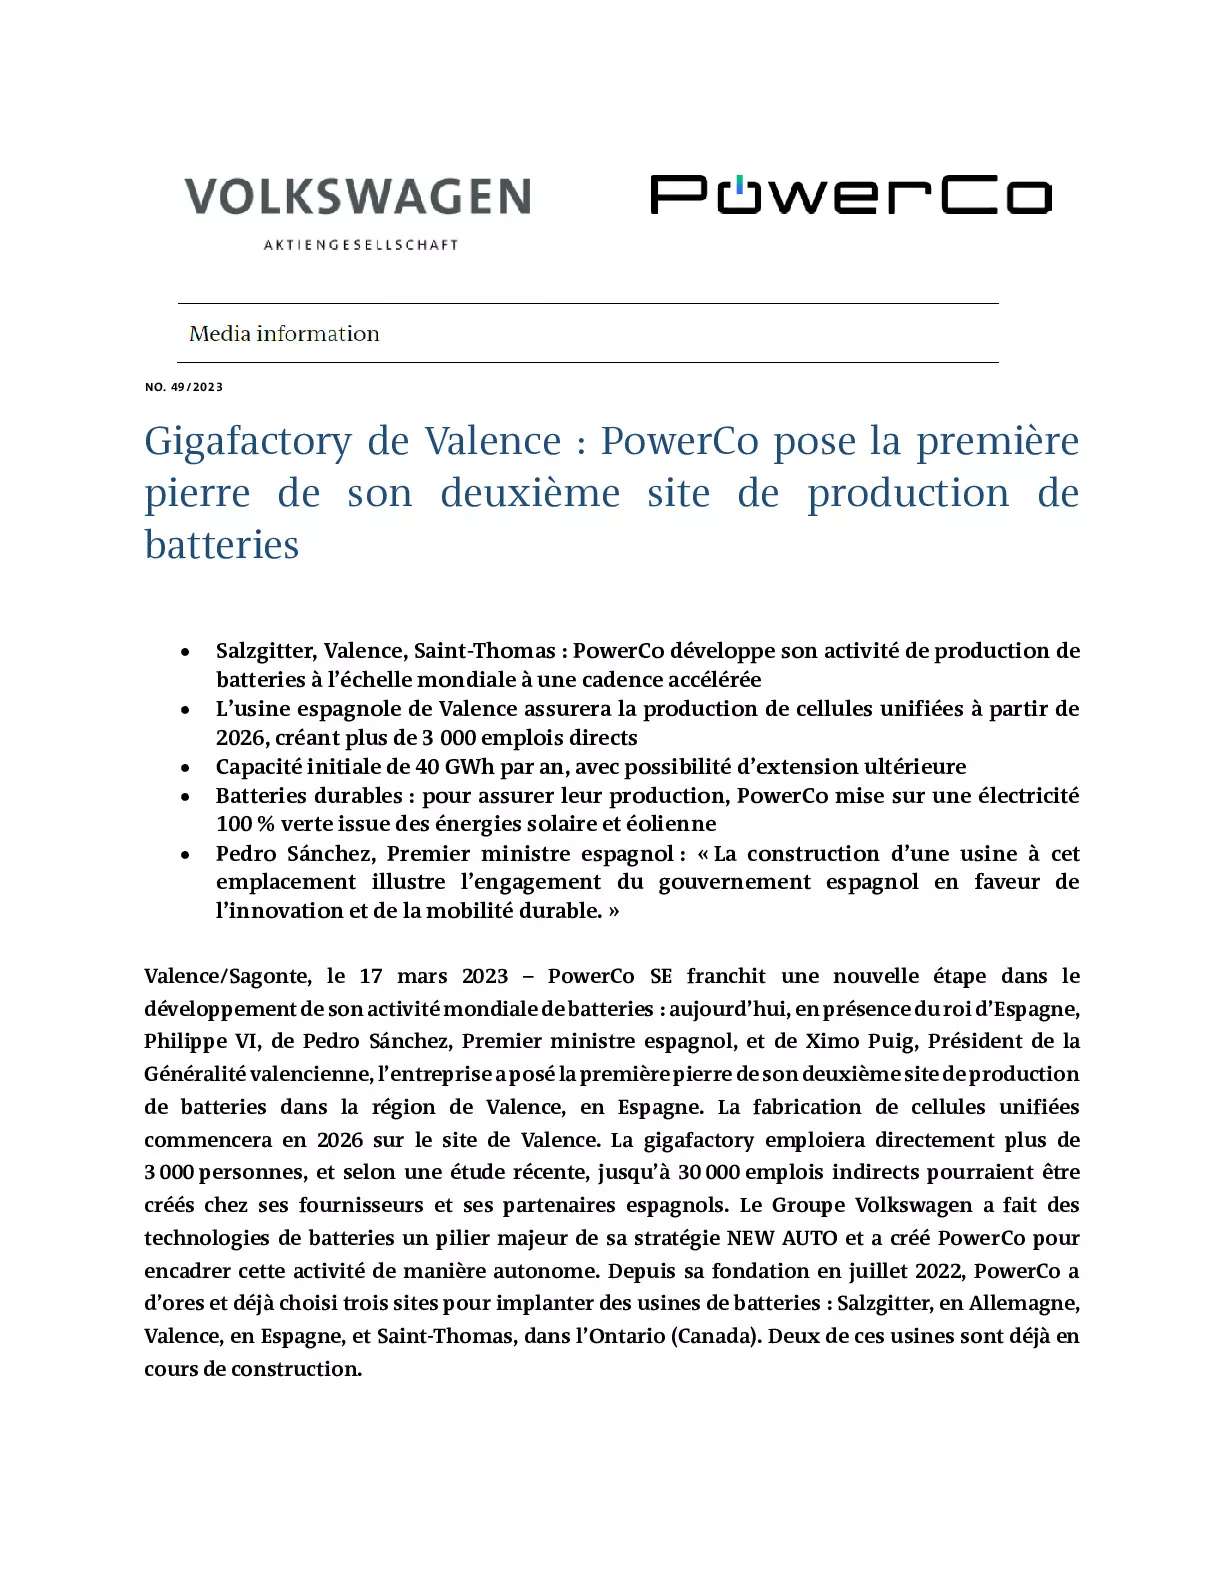 23_03_17_Gigafactory de Valence_PowerCo pose la première pierre de son deuxième site de production de batteries-pdf